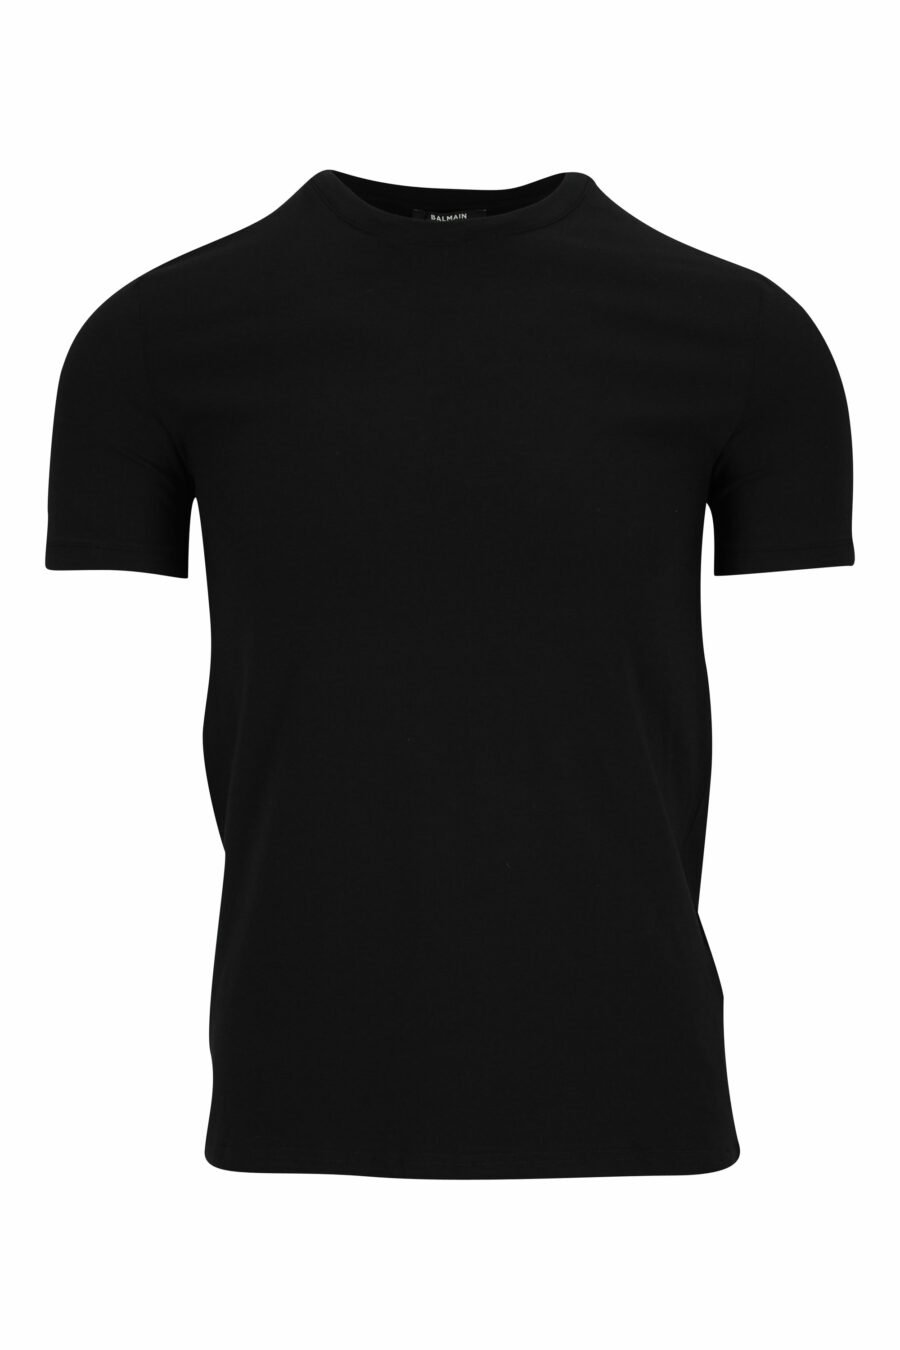 Schwarzes T-Shirt mit Mini-Logo am Kragen - 8032674524621